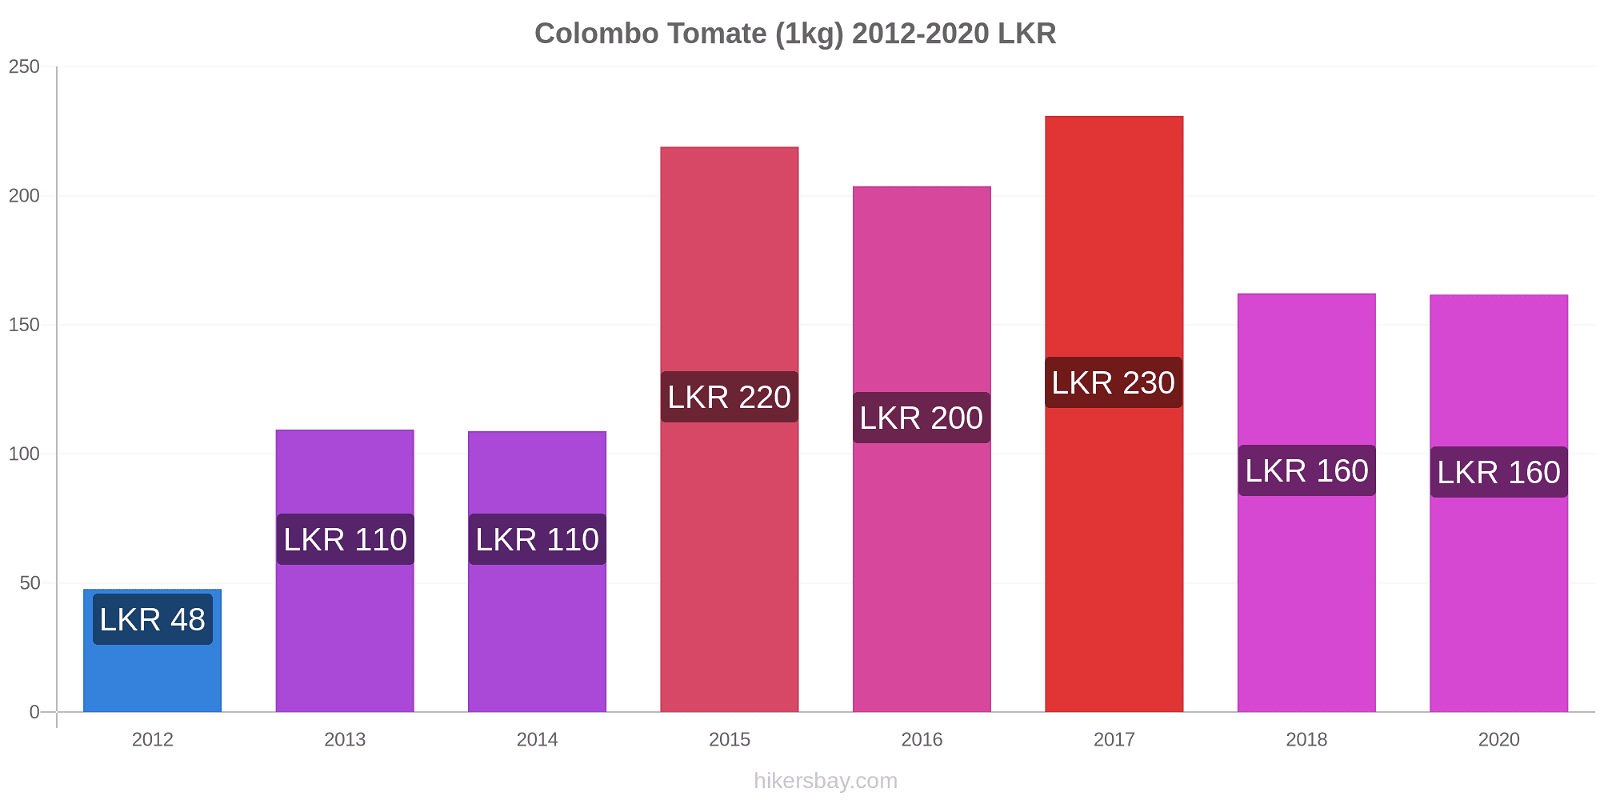 Colombo cambios de precios Tomate (1kg) hikersbay.com